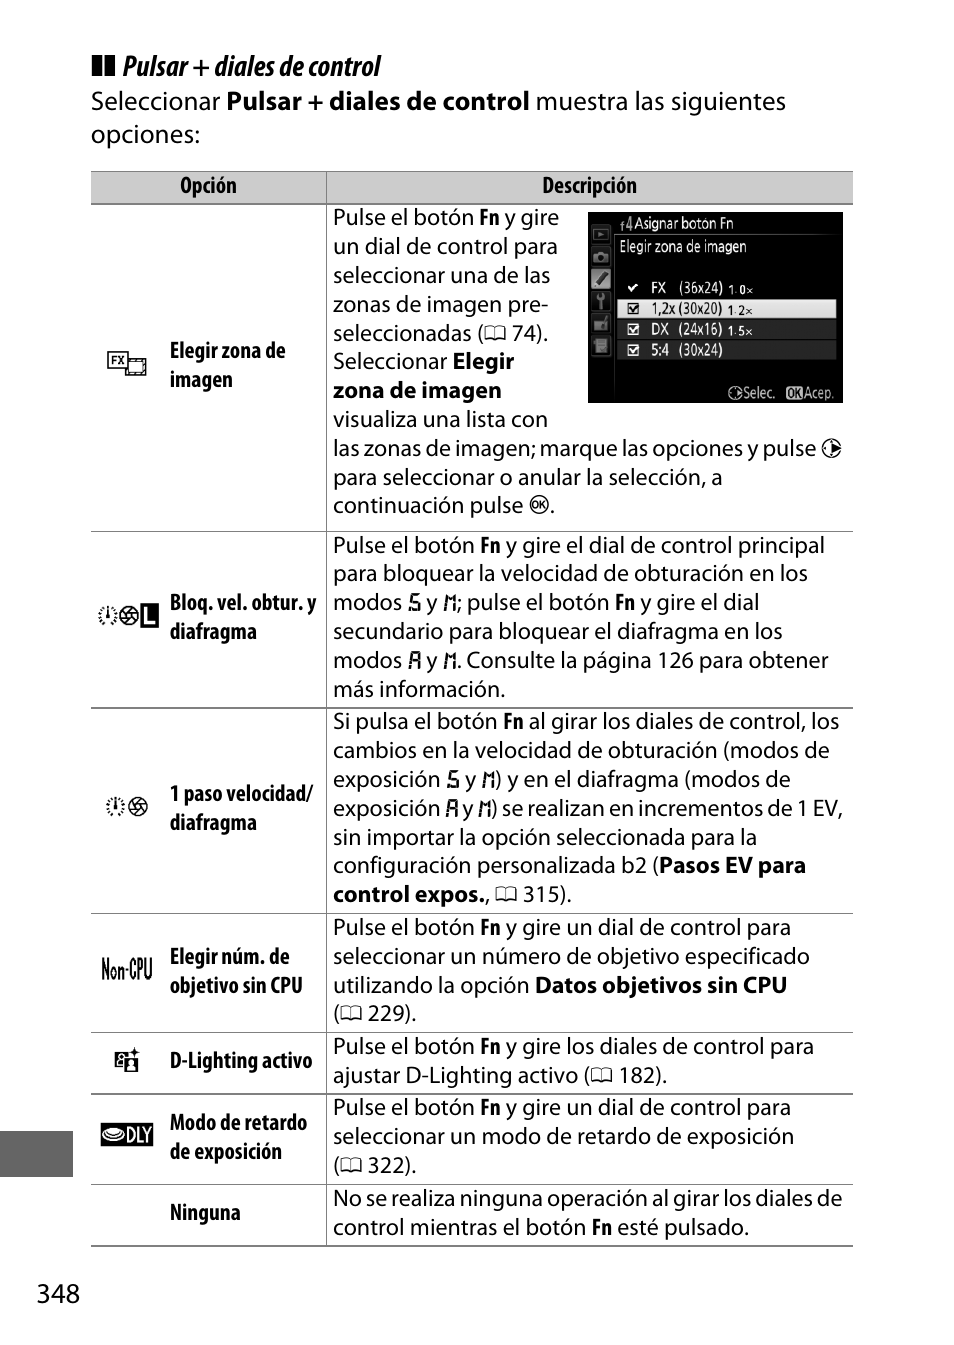 0 348). el blo, Pulsar + diales de control | Nikon D810 Manual del usuario | Página 372 / 530